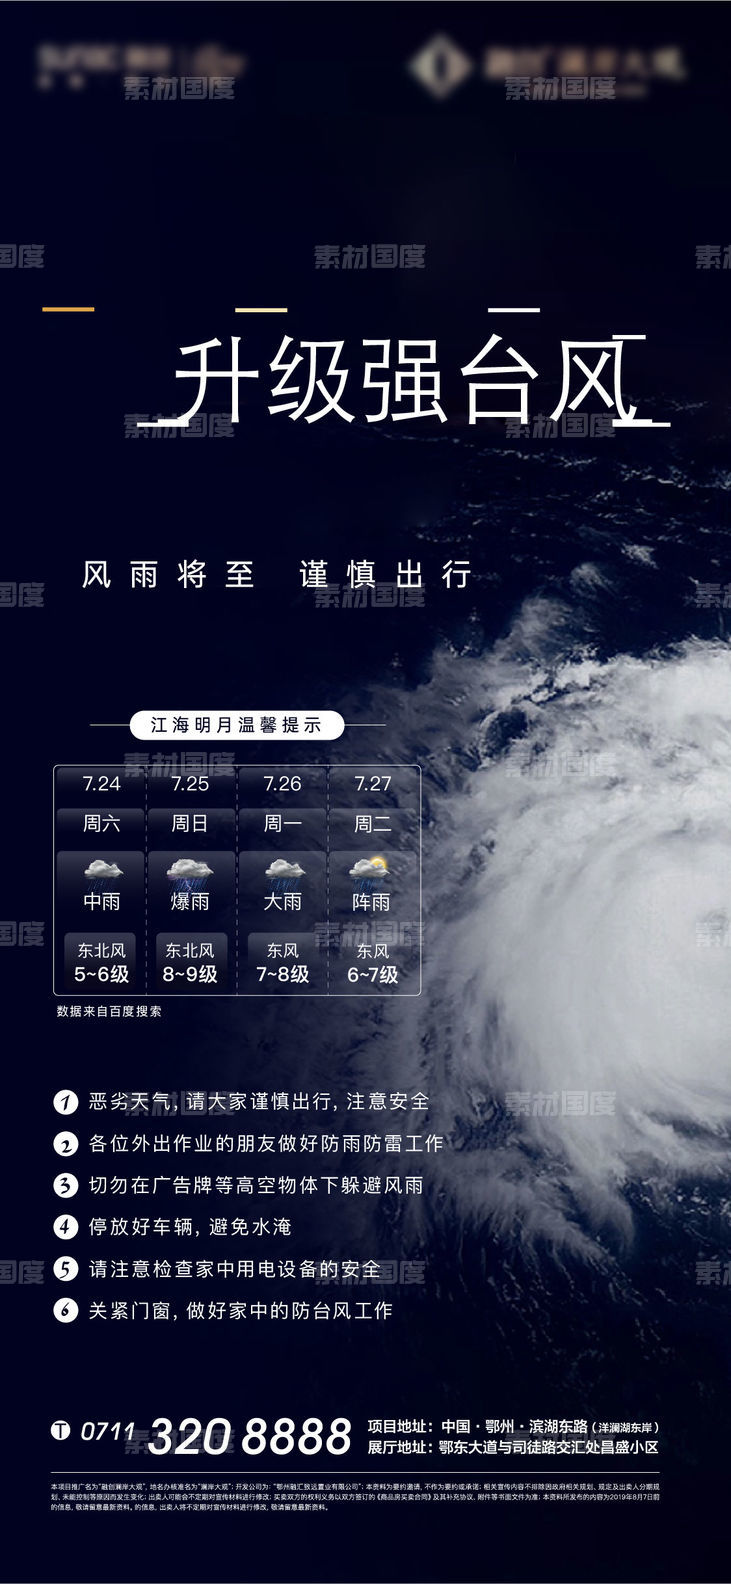 台风 天地 地产 海报 降雨 温馨 提示